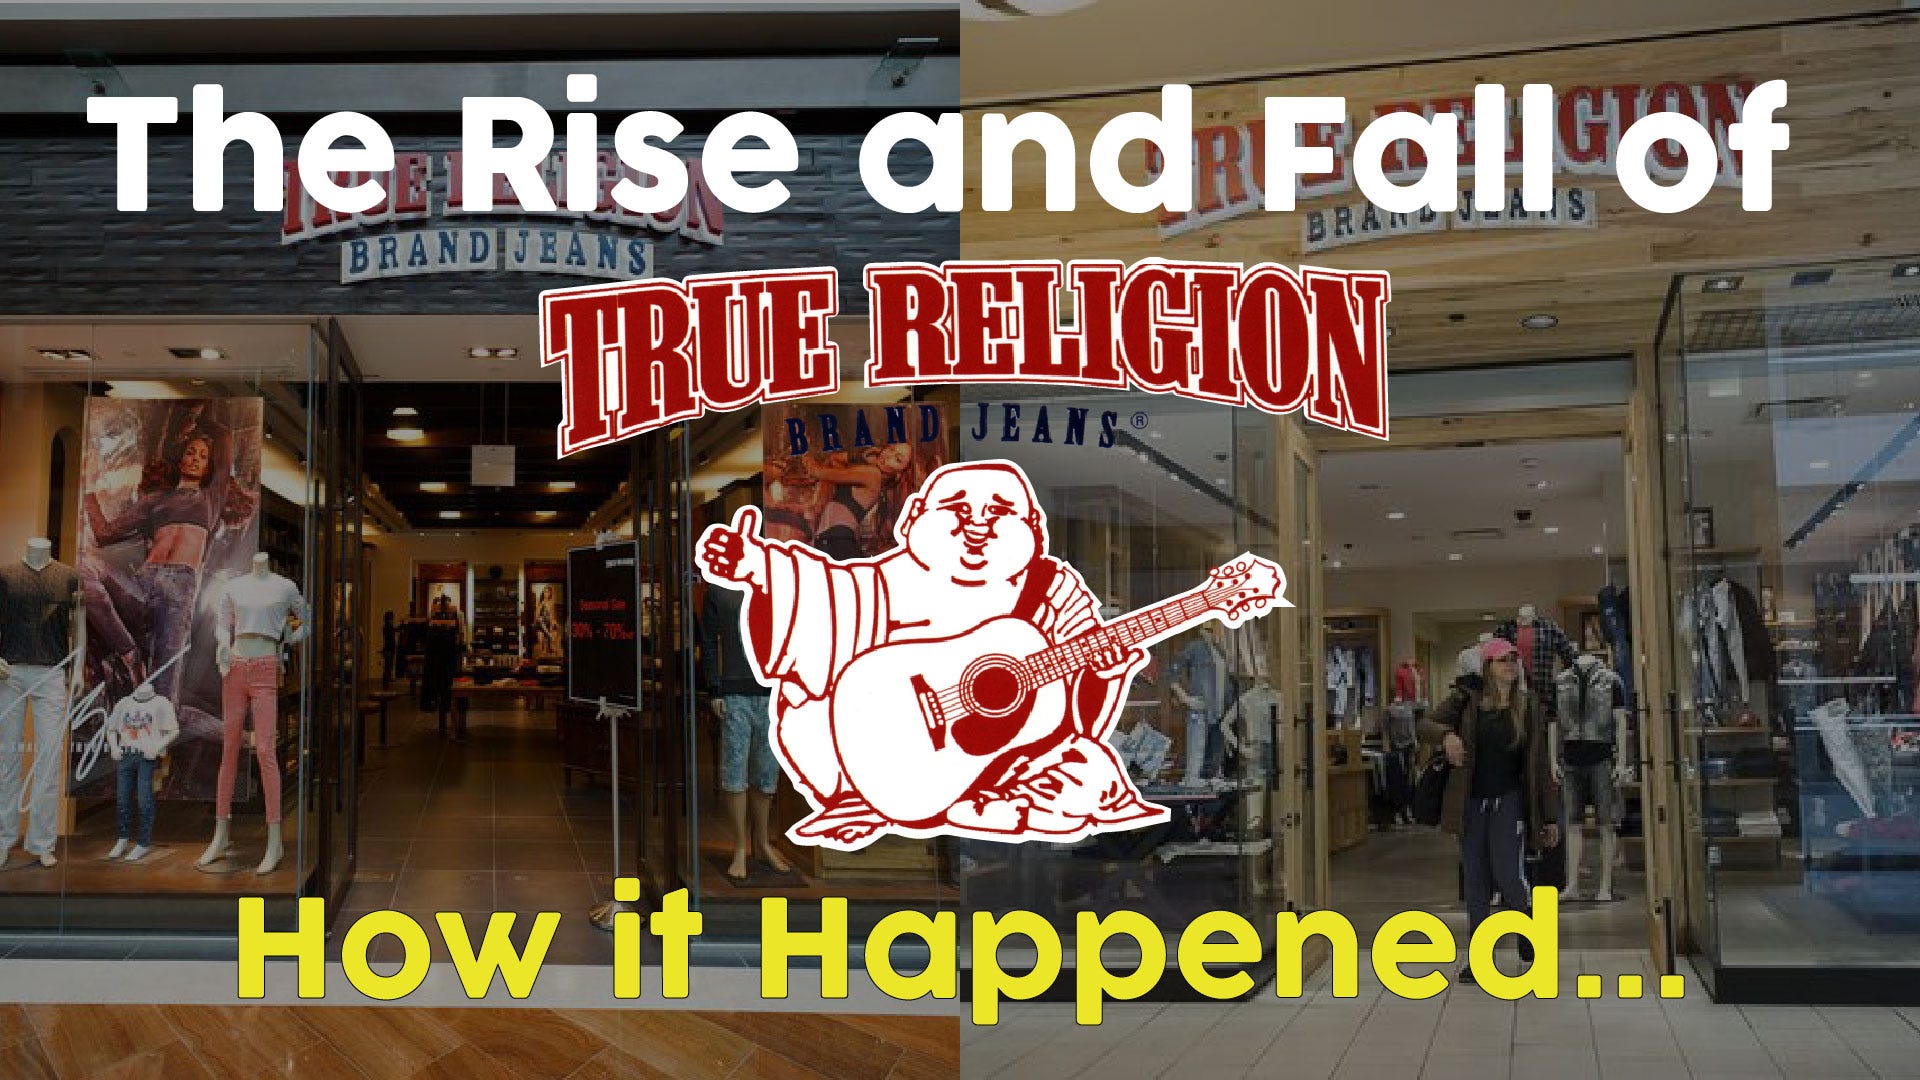 true religion company